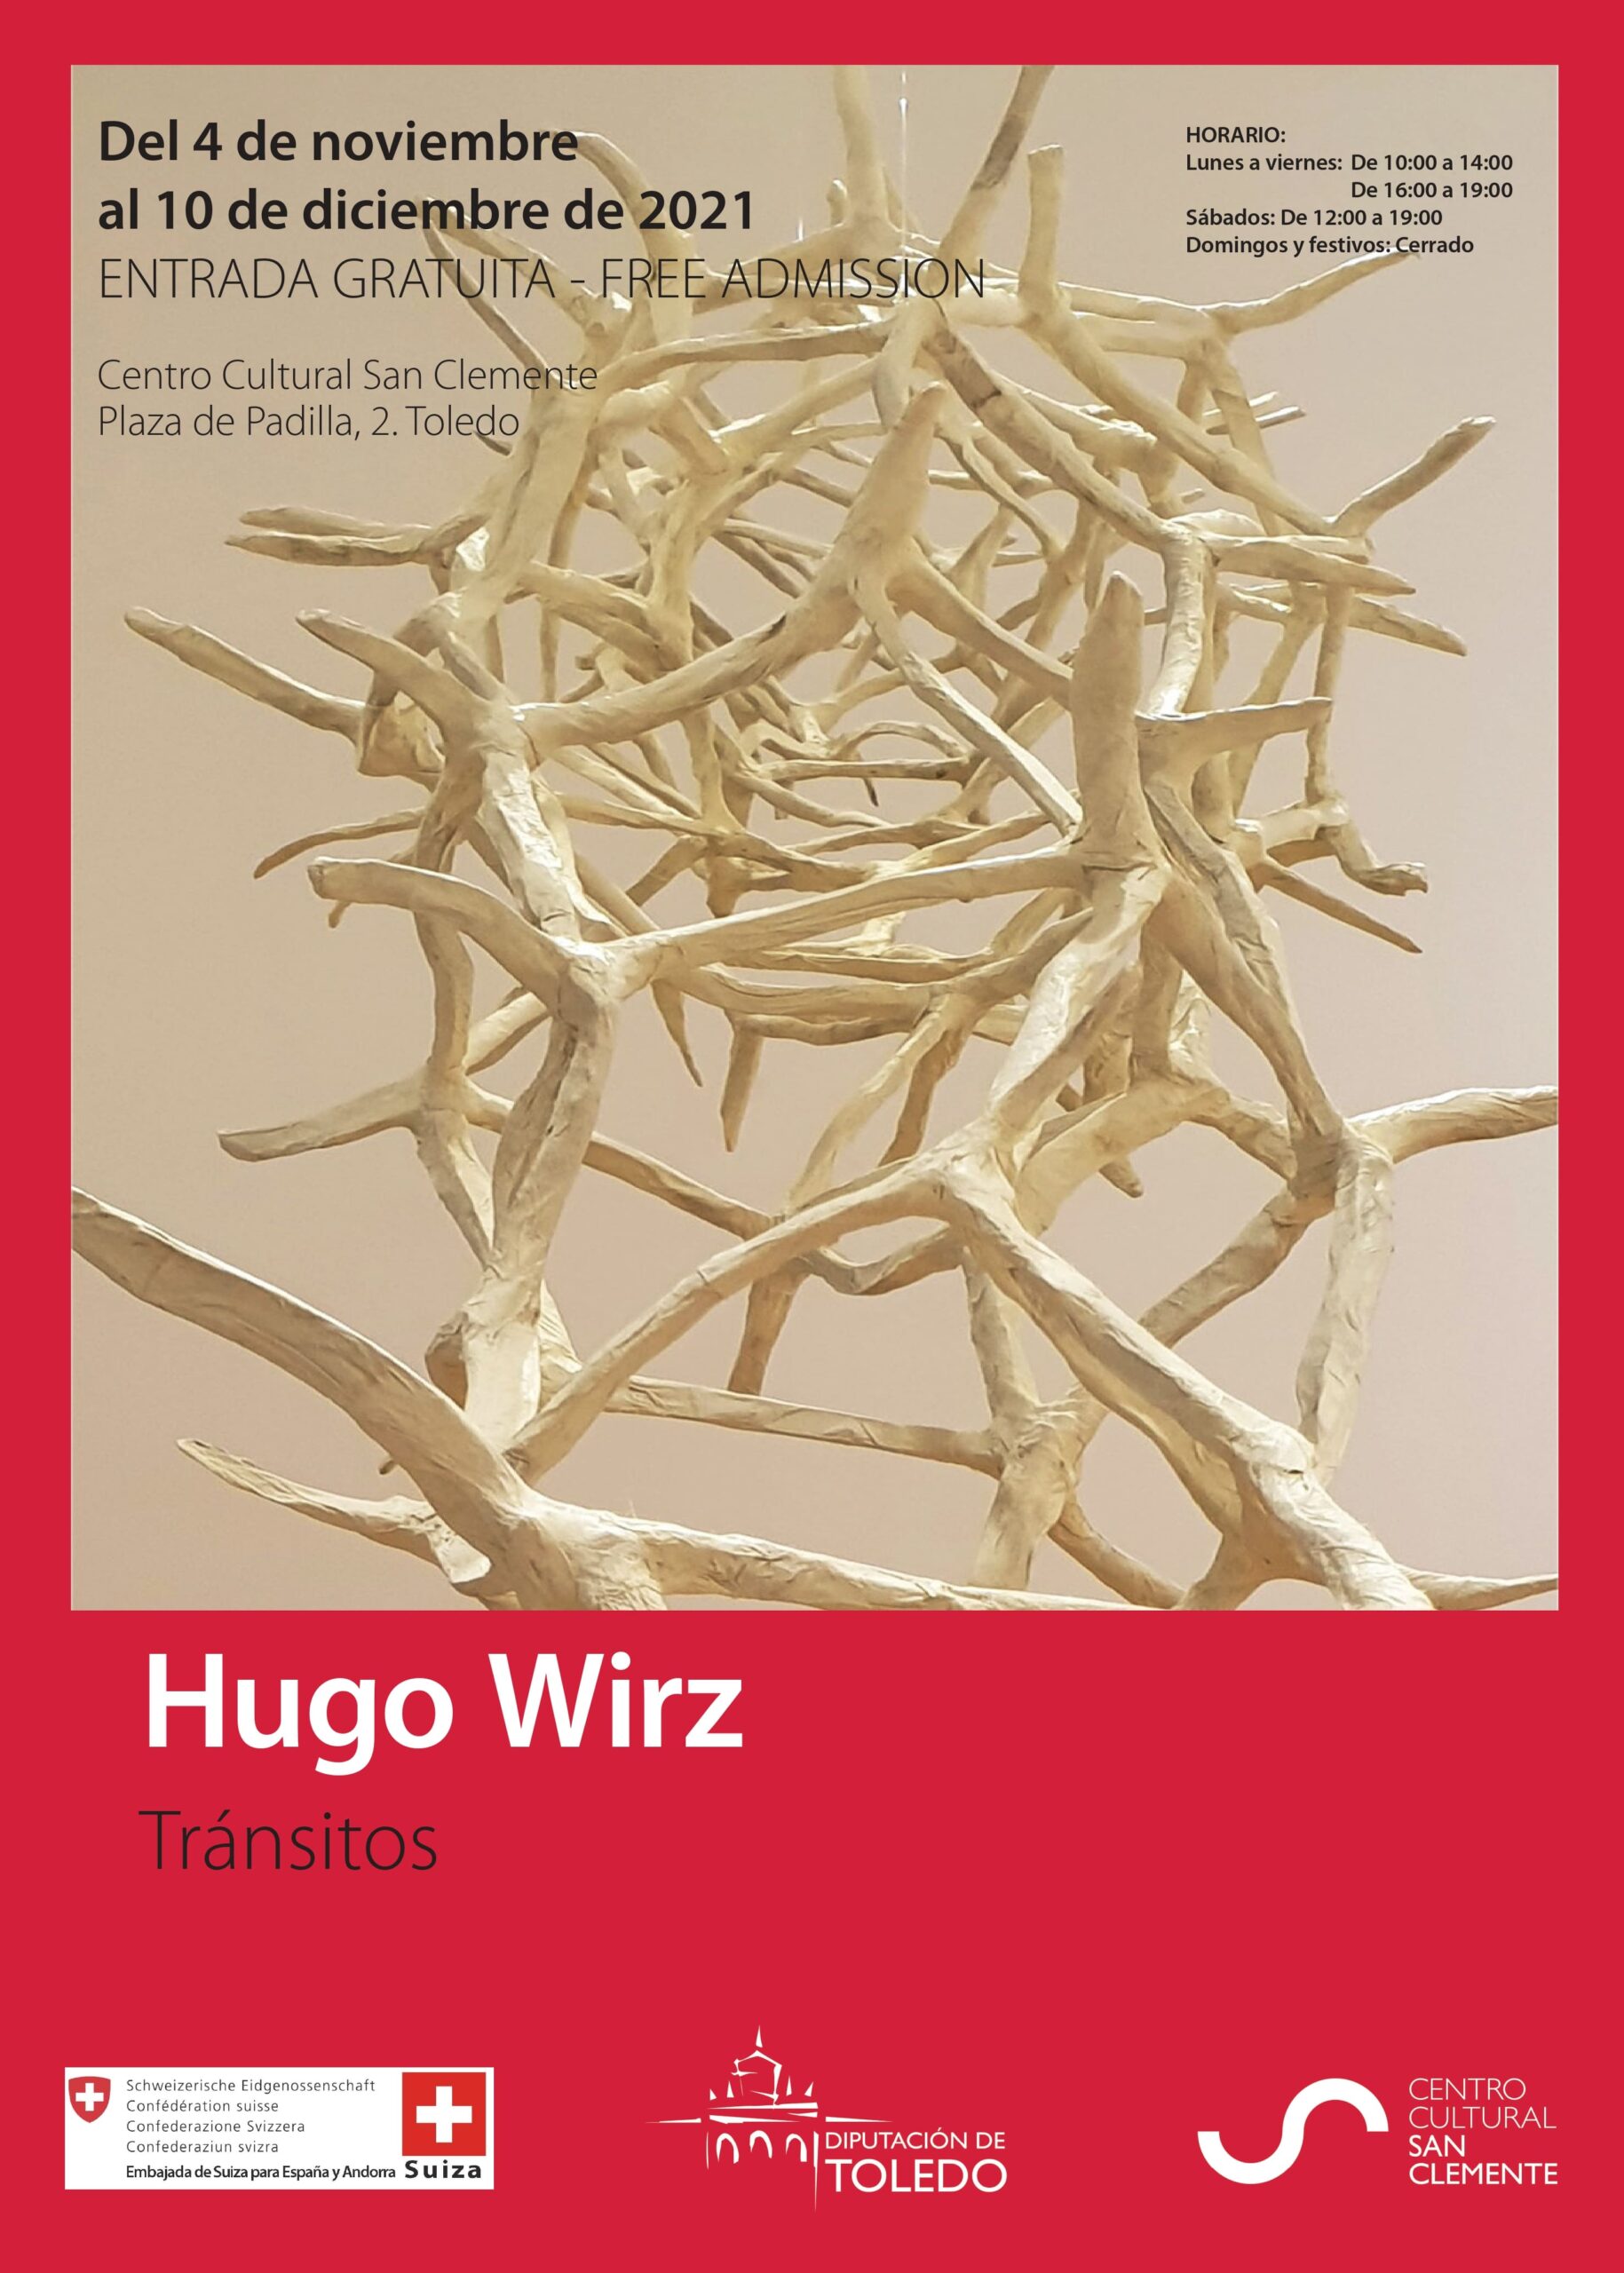 Hugo Wirz Exposición Tránsitos